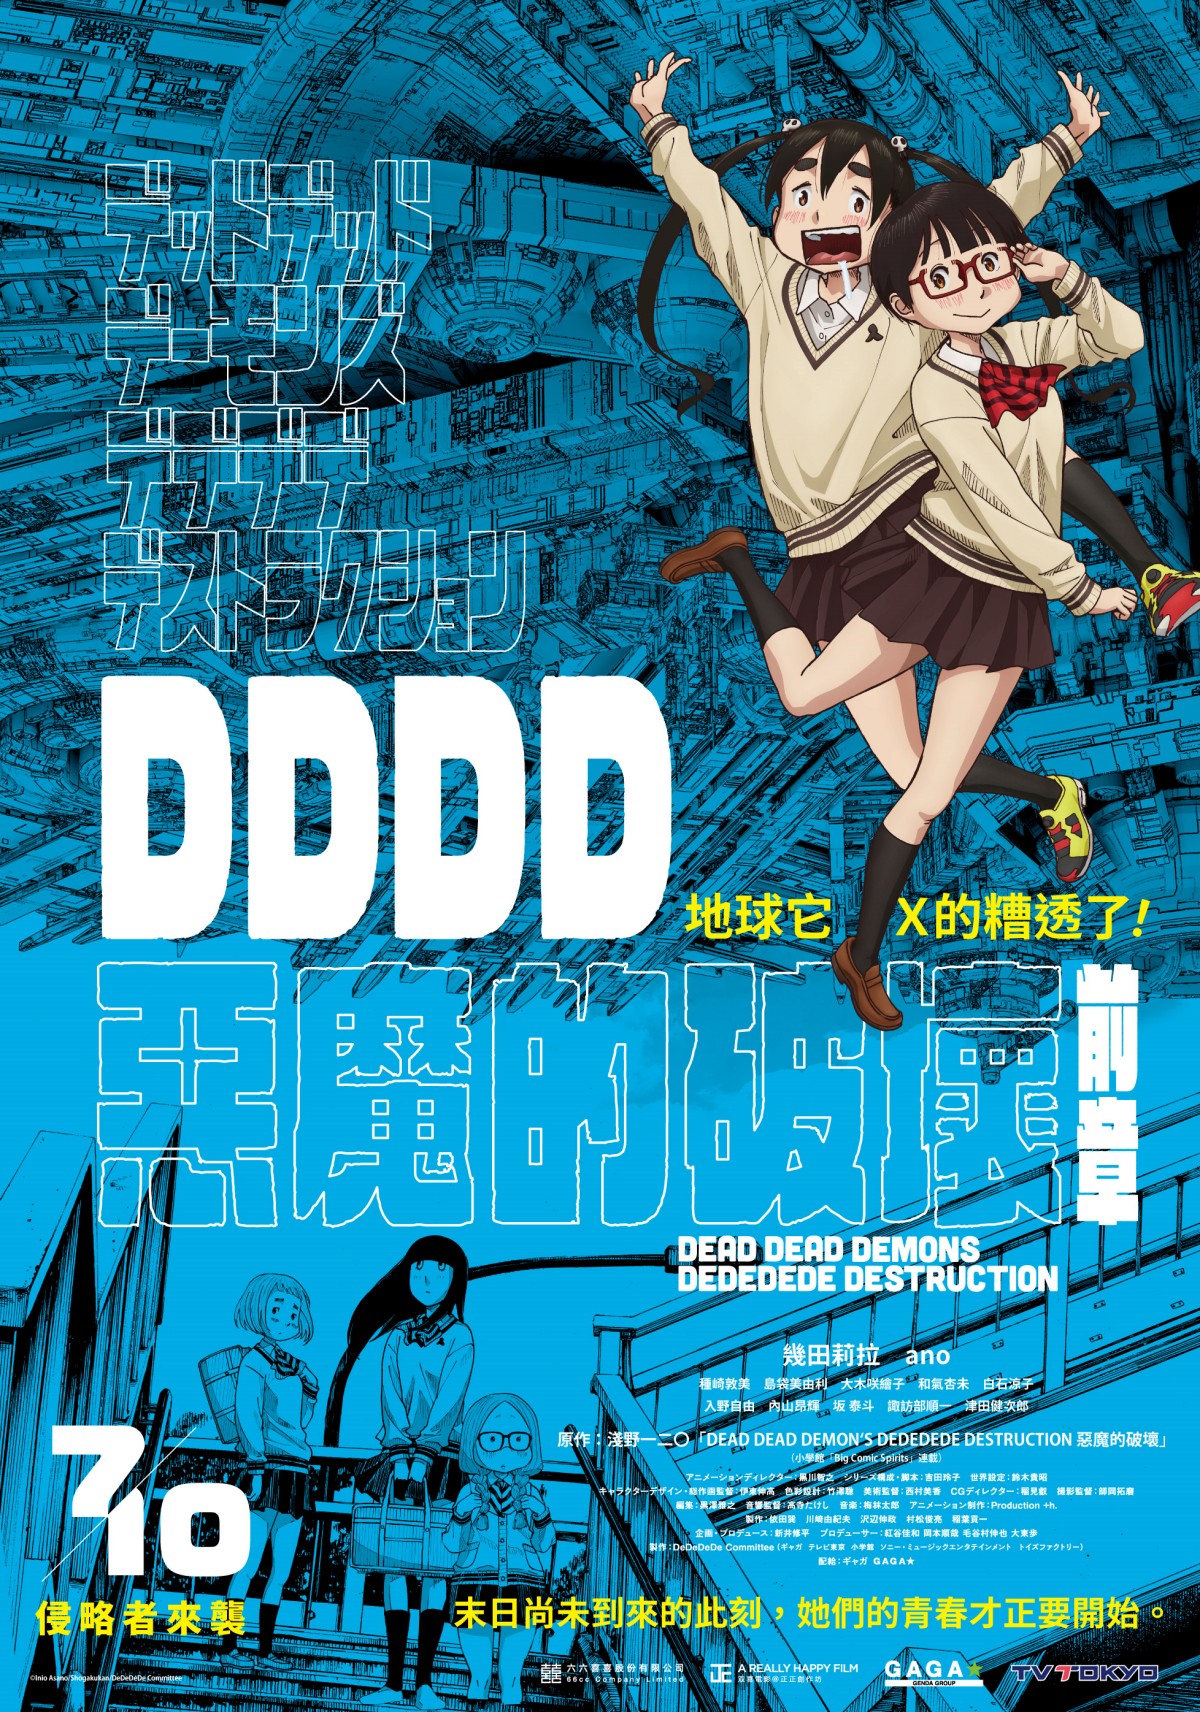 日本動畫電影《DDDD惡魔的破壞》